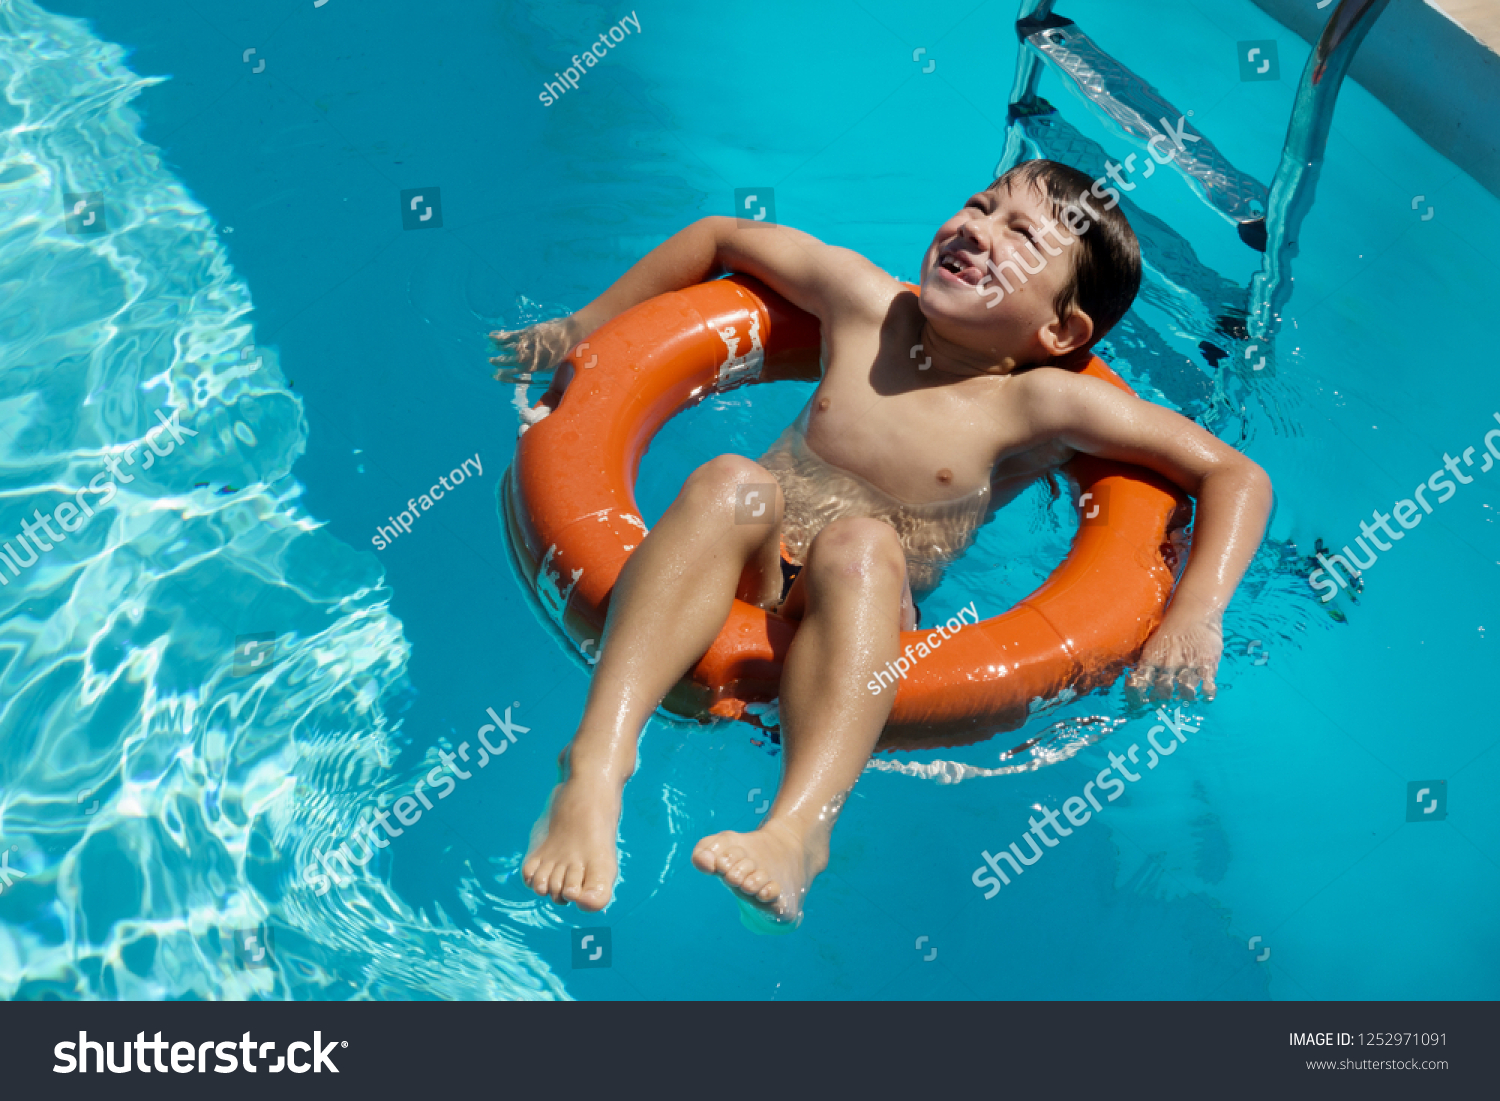 голые парни купаются в бассейне с девушками фото 118